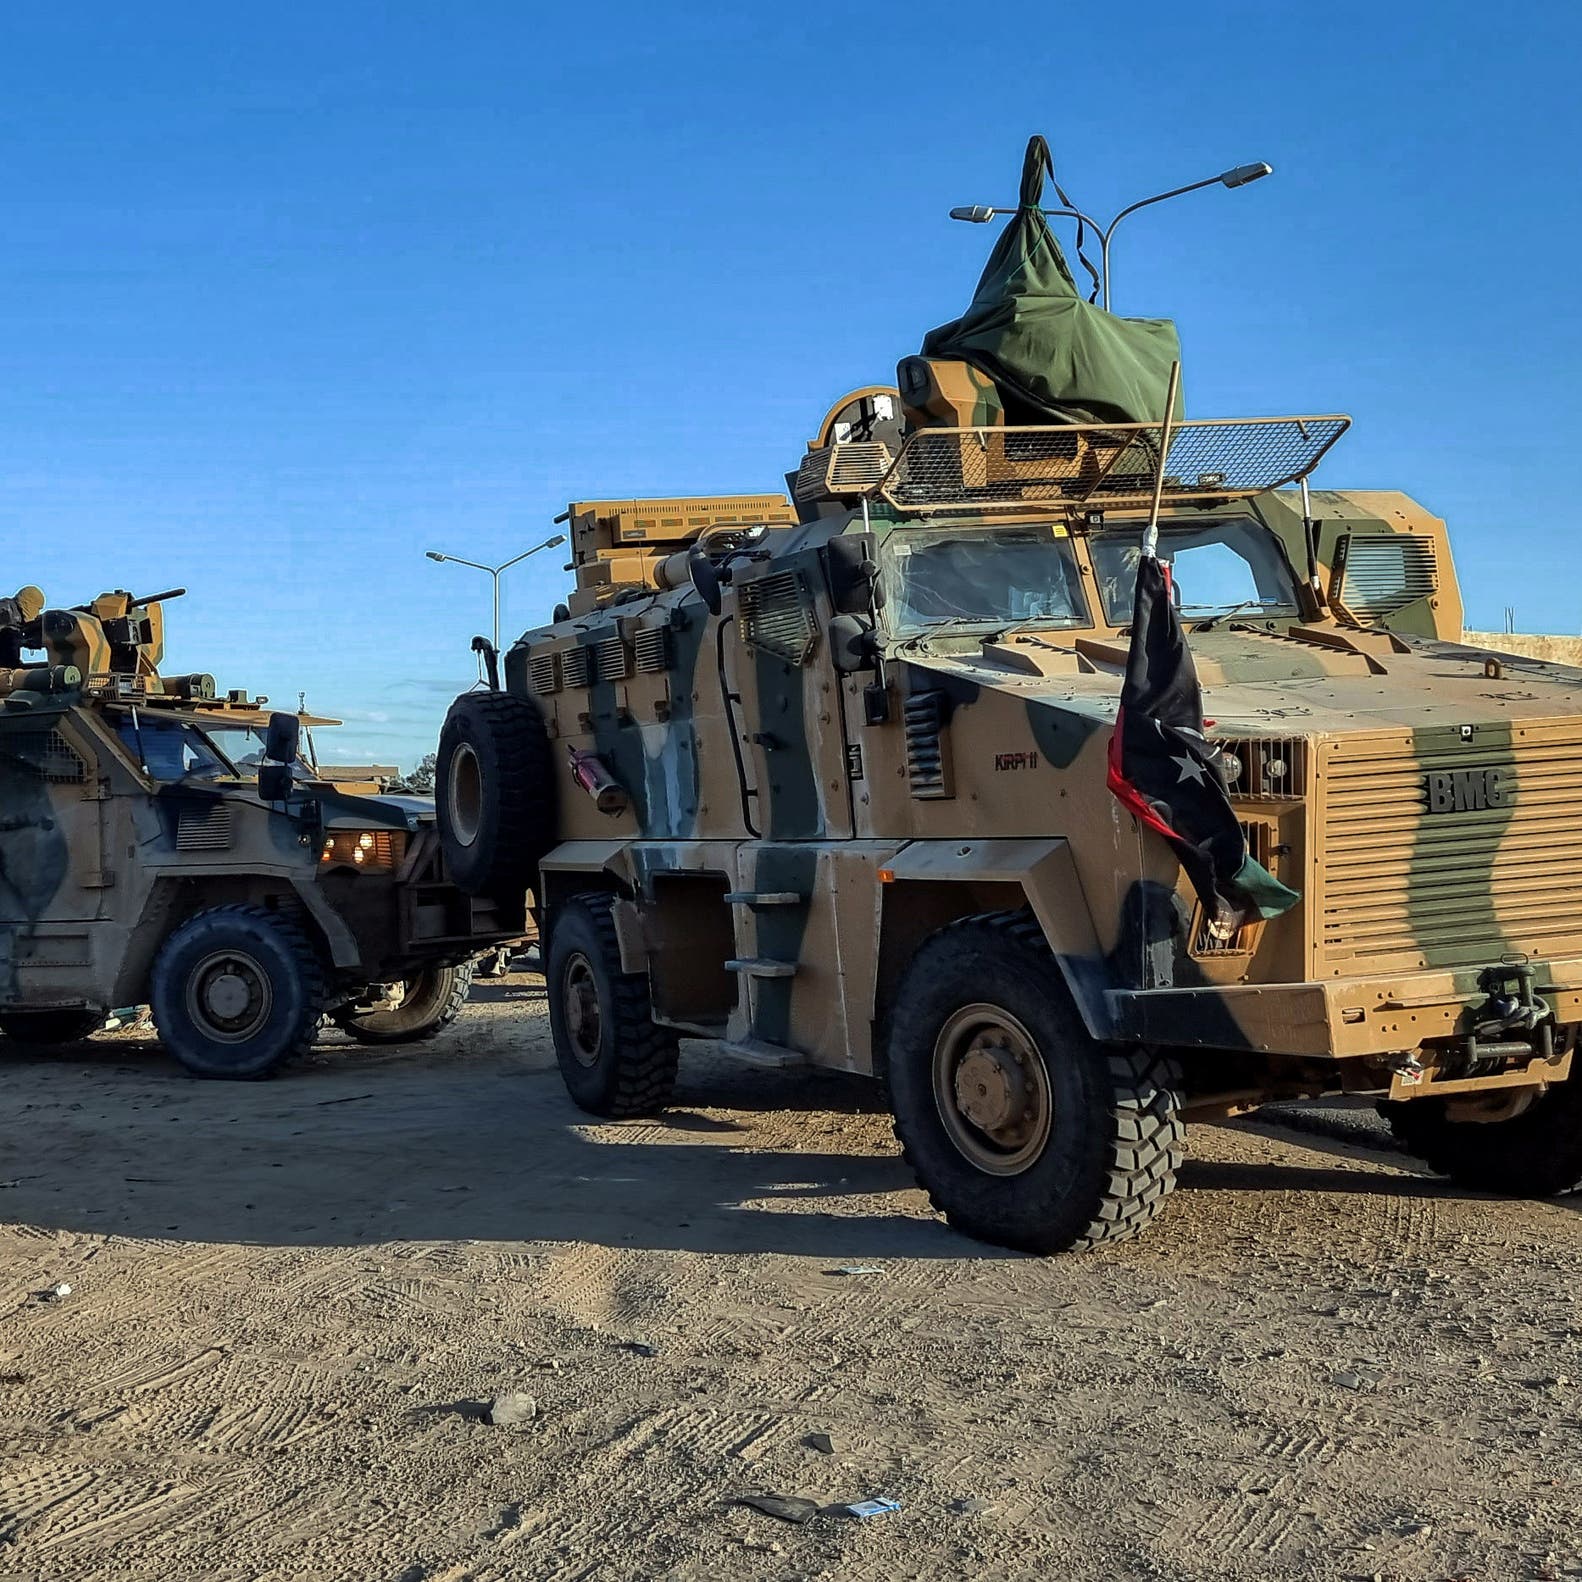 أرتال مسلحة تدخل طرابلس الليبية.. والهدف منع دخول باشاغا